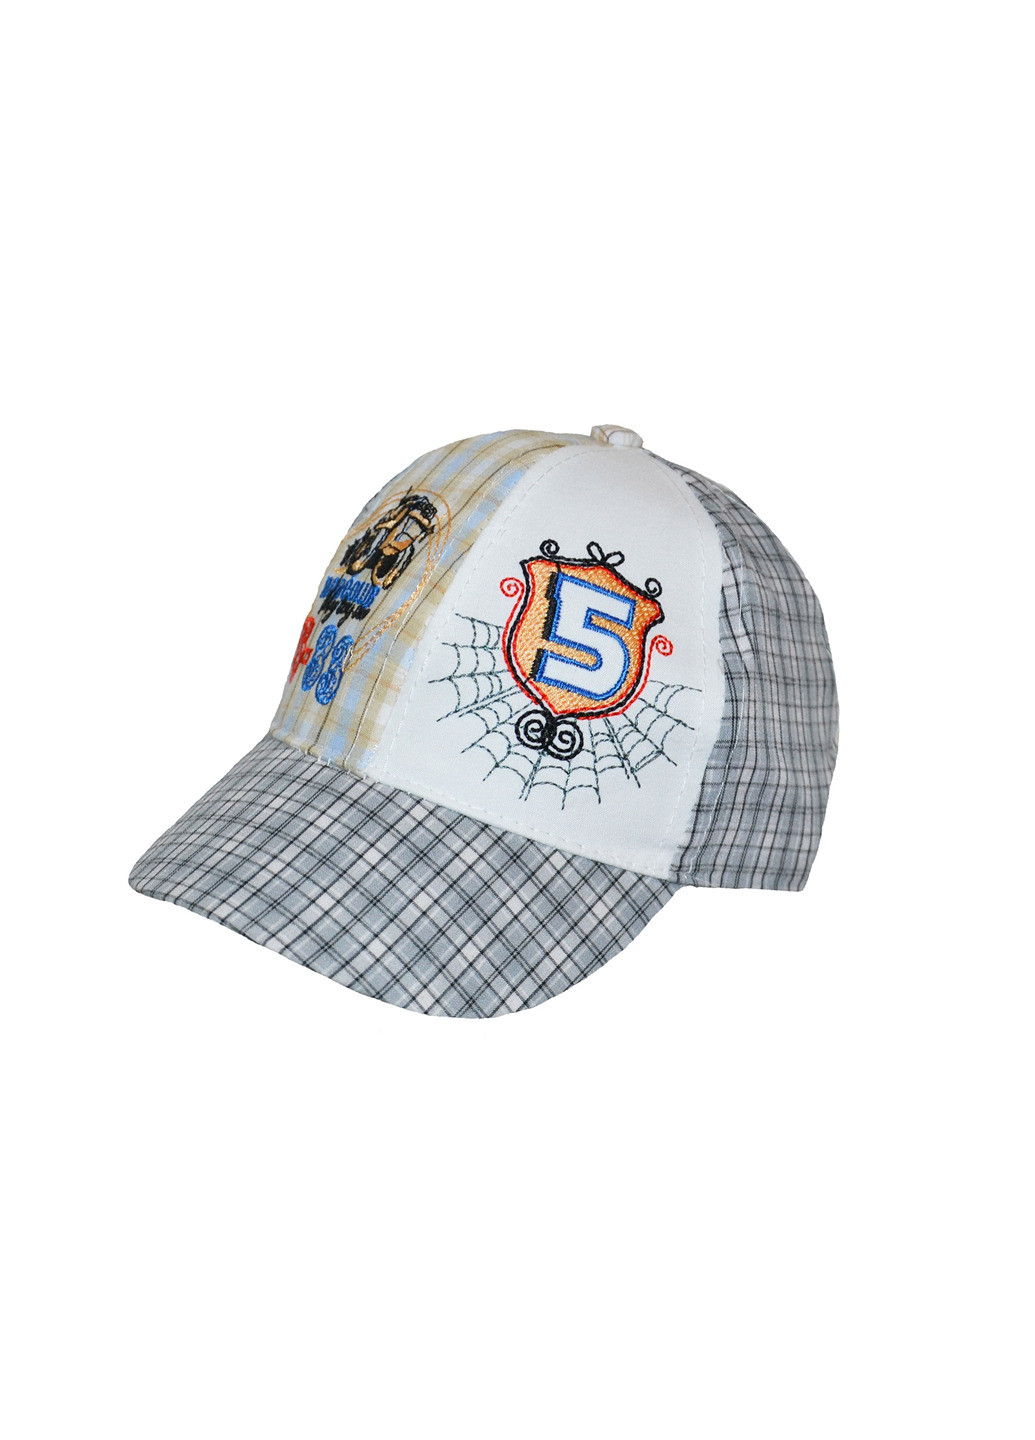 Кепка Sweet Hats бейсболка рисунок комбинированная кэжуал